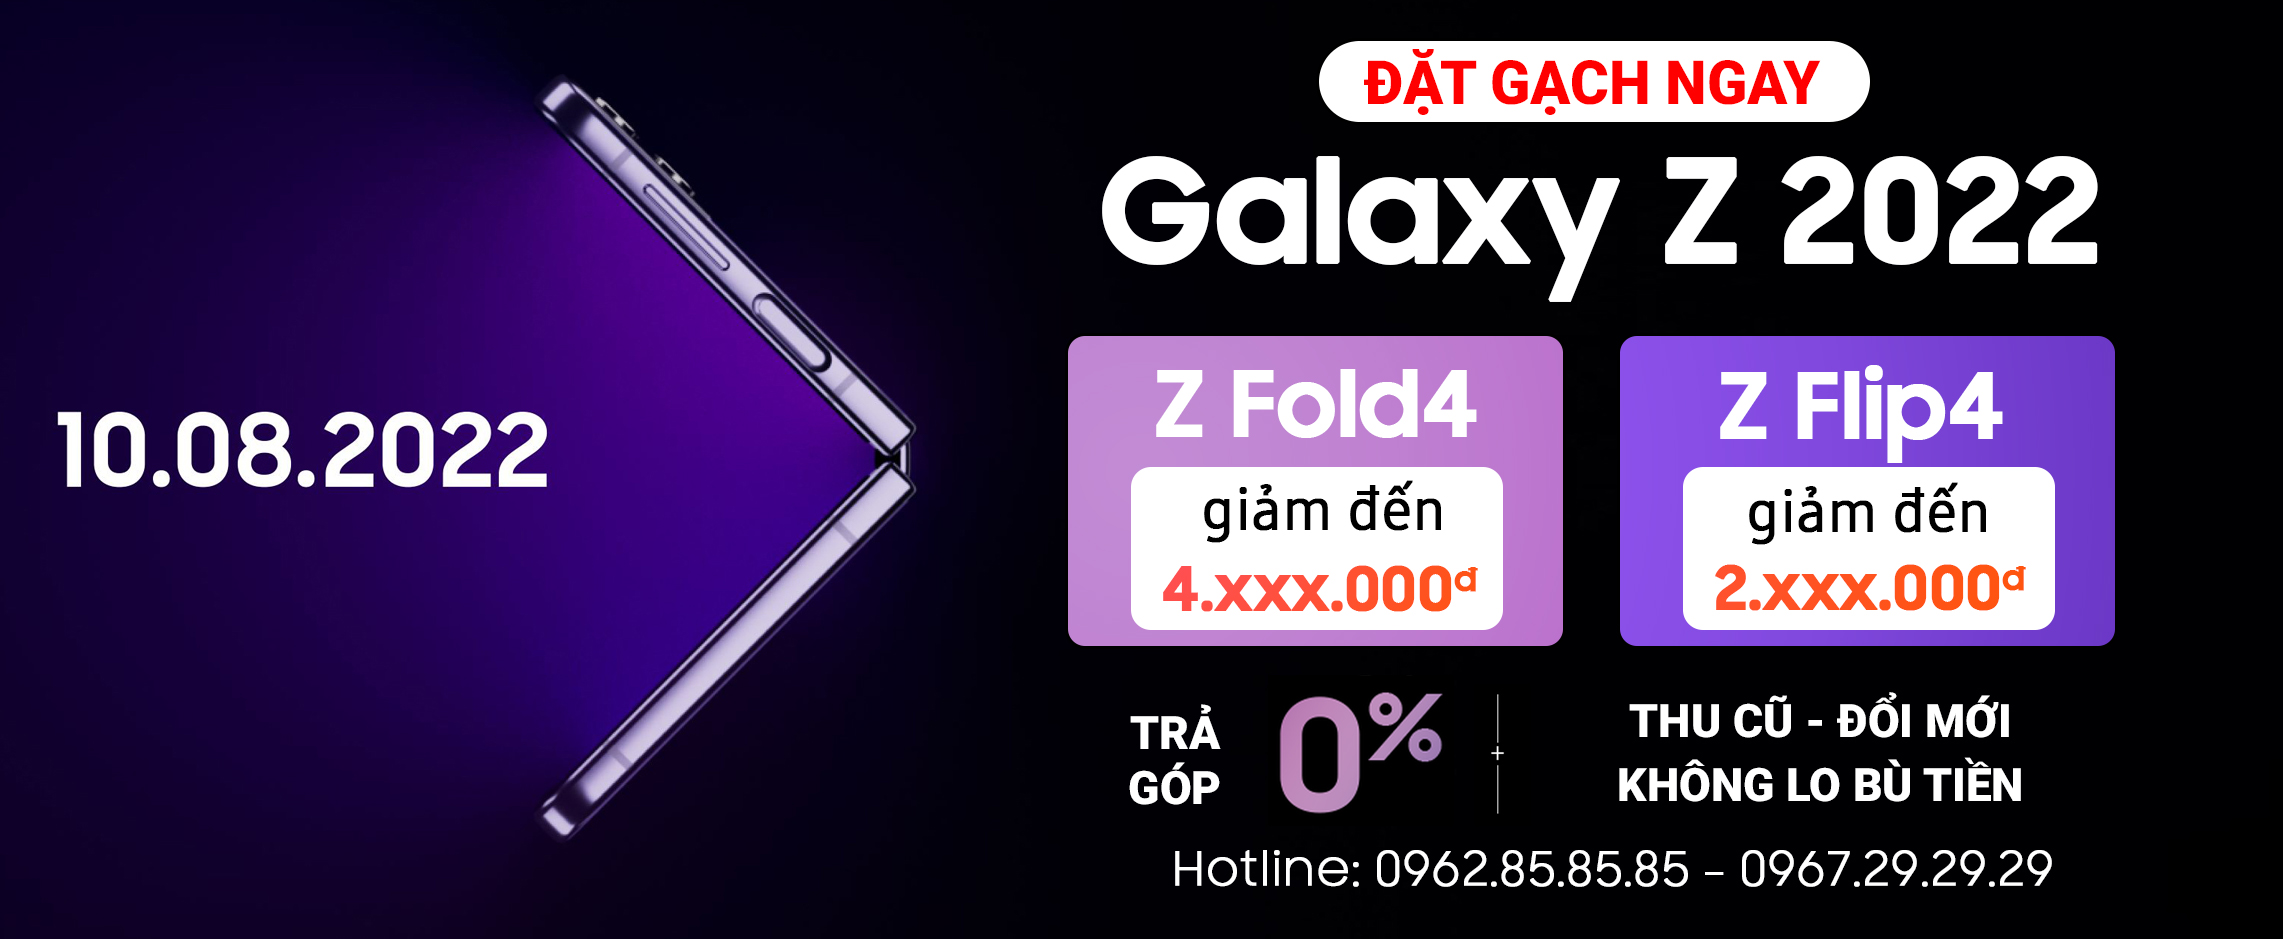 Đặt trước Galaxy Z Fold4 5G, Galaxy Z Flip4 5G